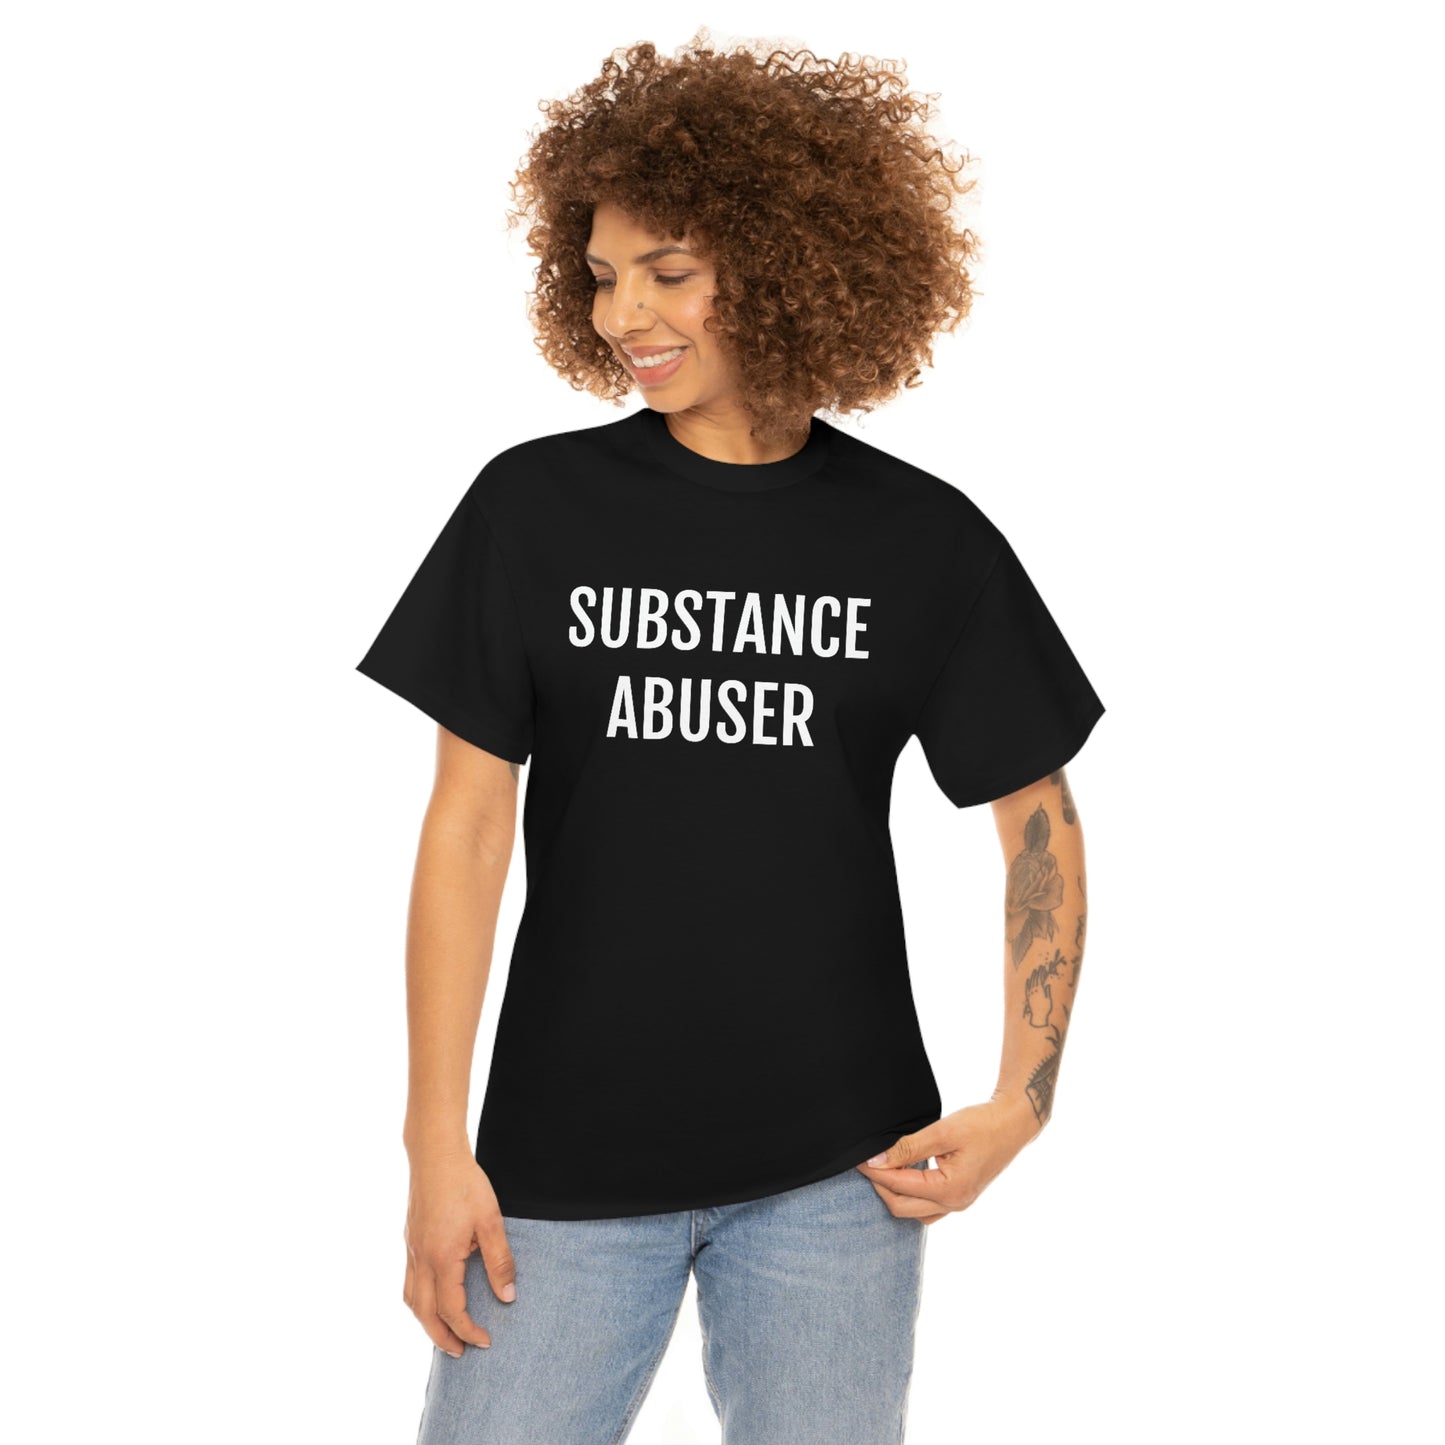 SUBSTANCE ABUSER T-SHIRT